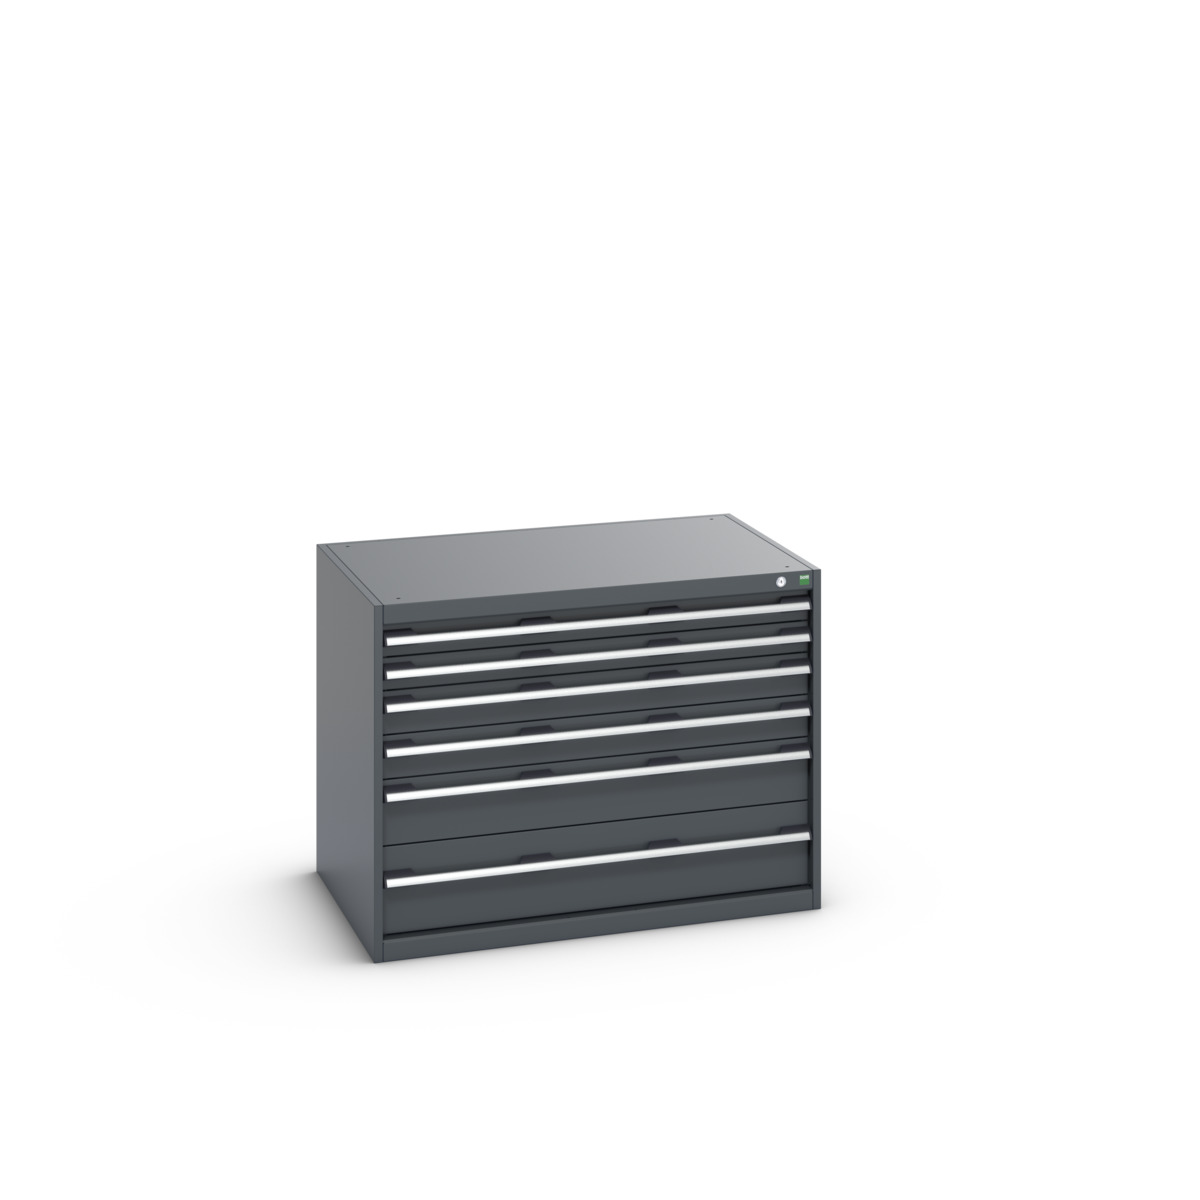 40029085.77V - cubio drawer cabinet